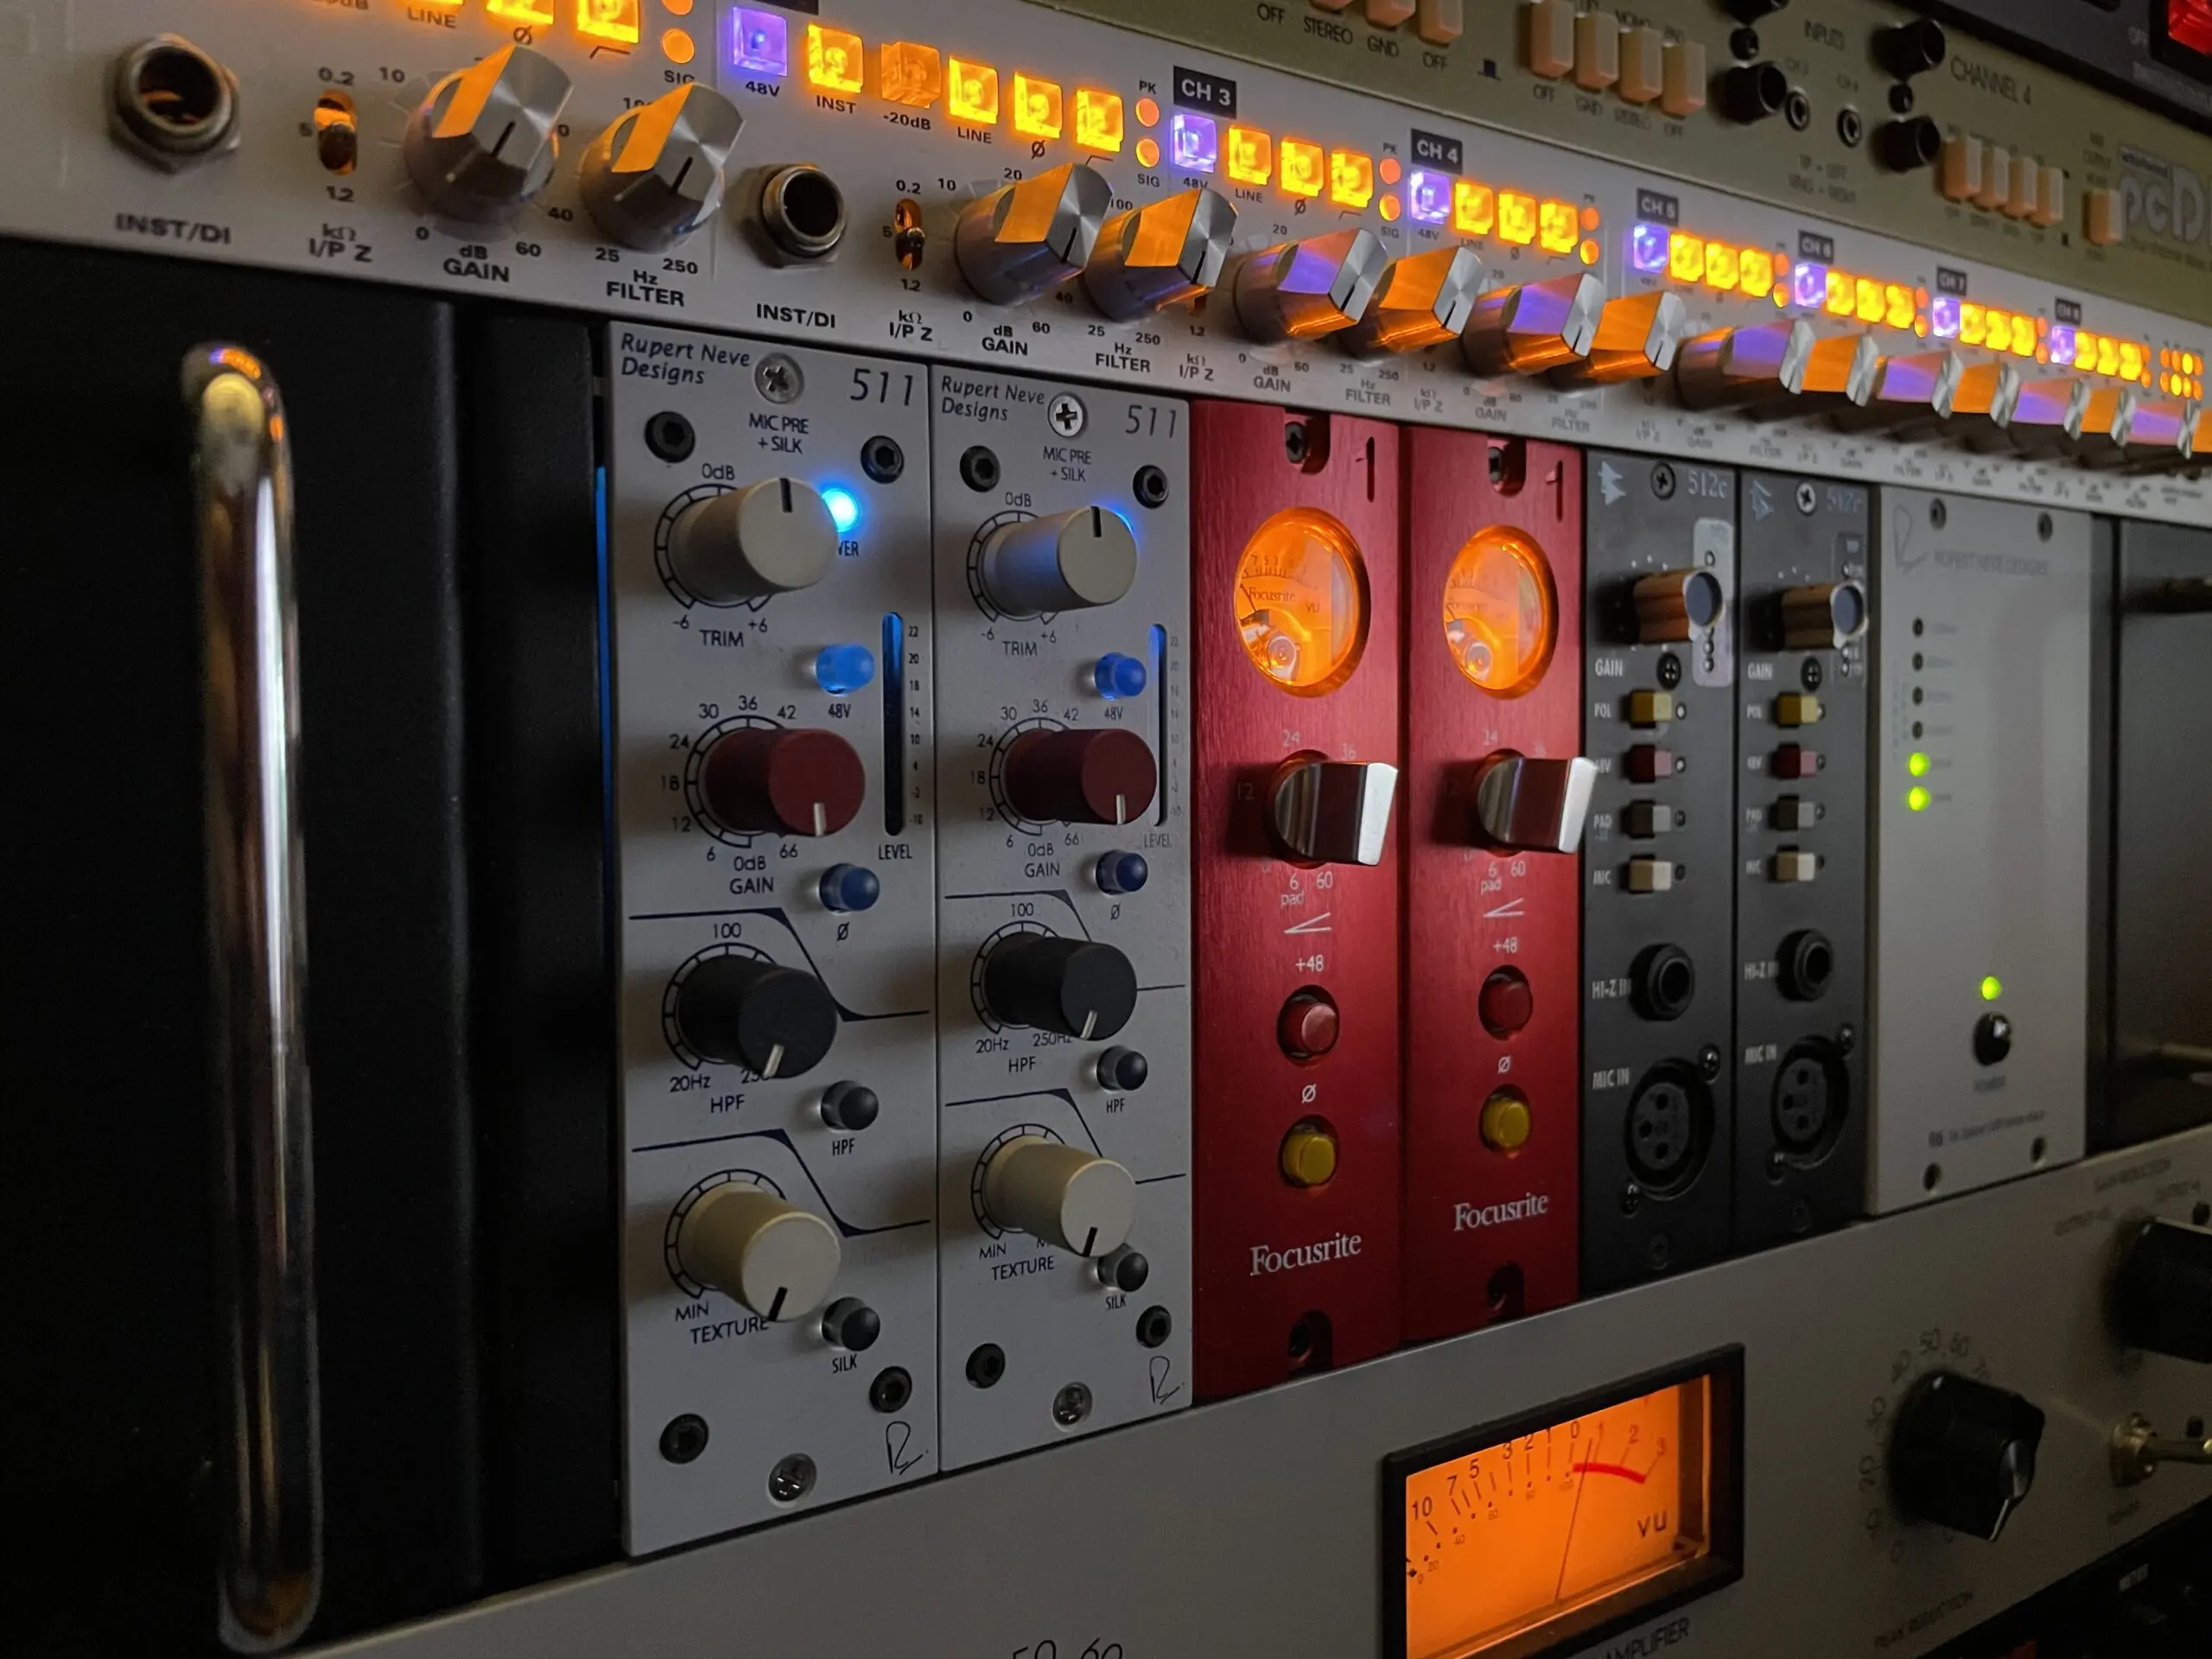 Audio music production studio equipment